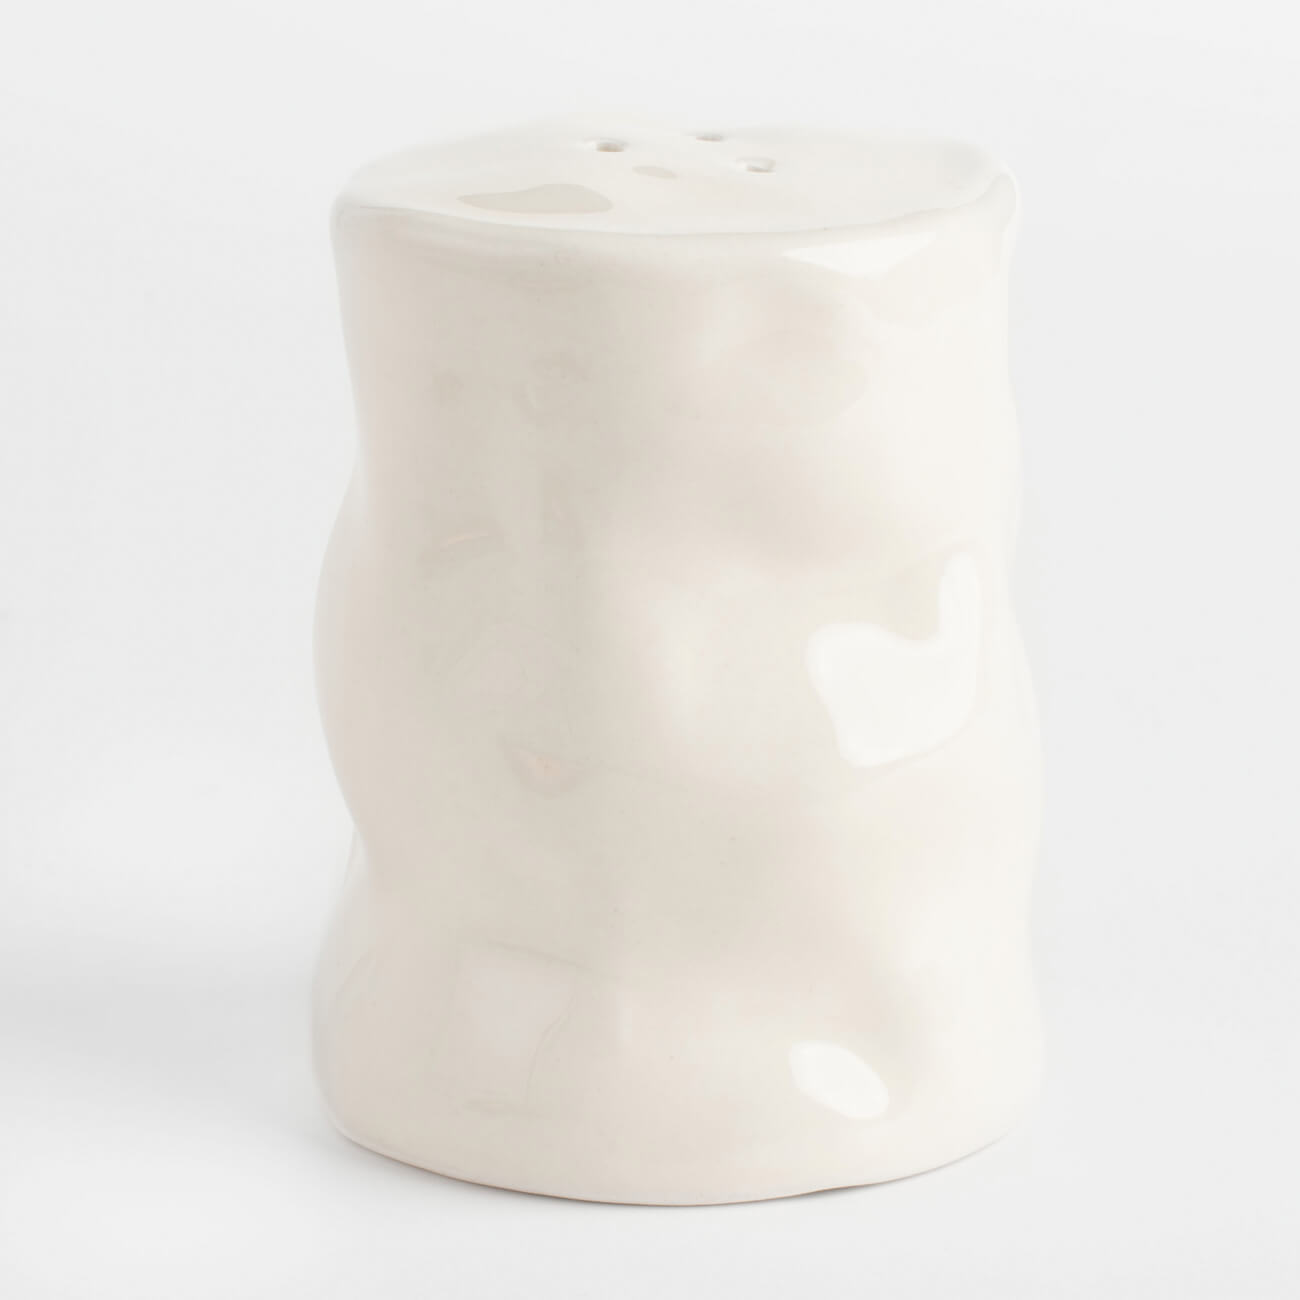 ваза для ов 24 см керамика молочная мятый эффект crumple Емкость для соли или перца, 7 см, керамика, молочная, Мятый эффект, Crumple